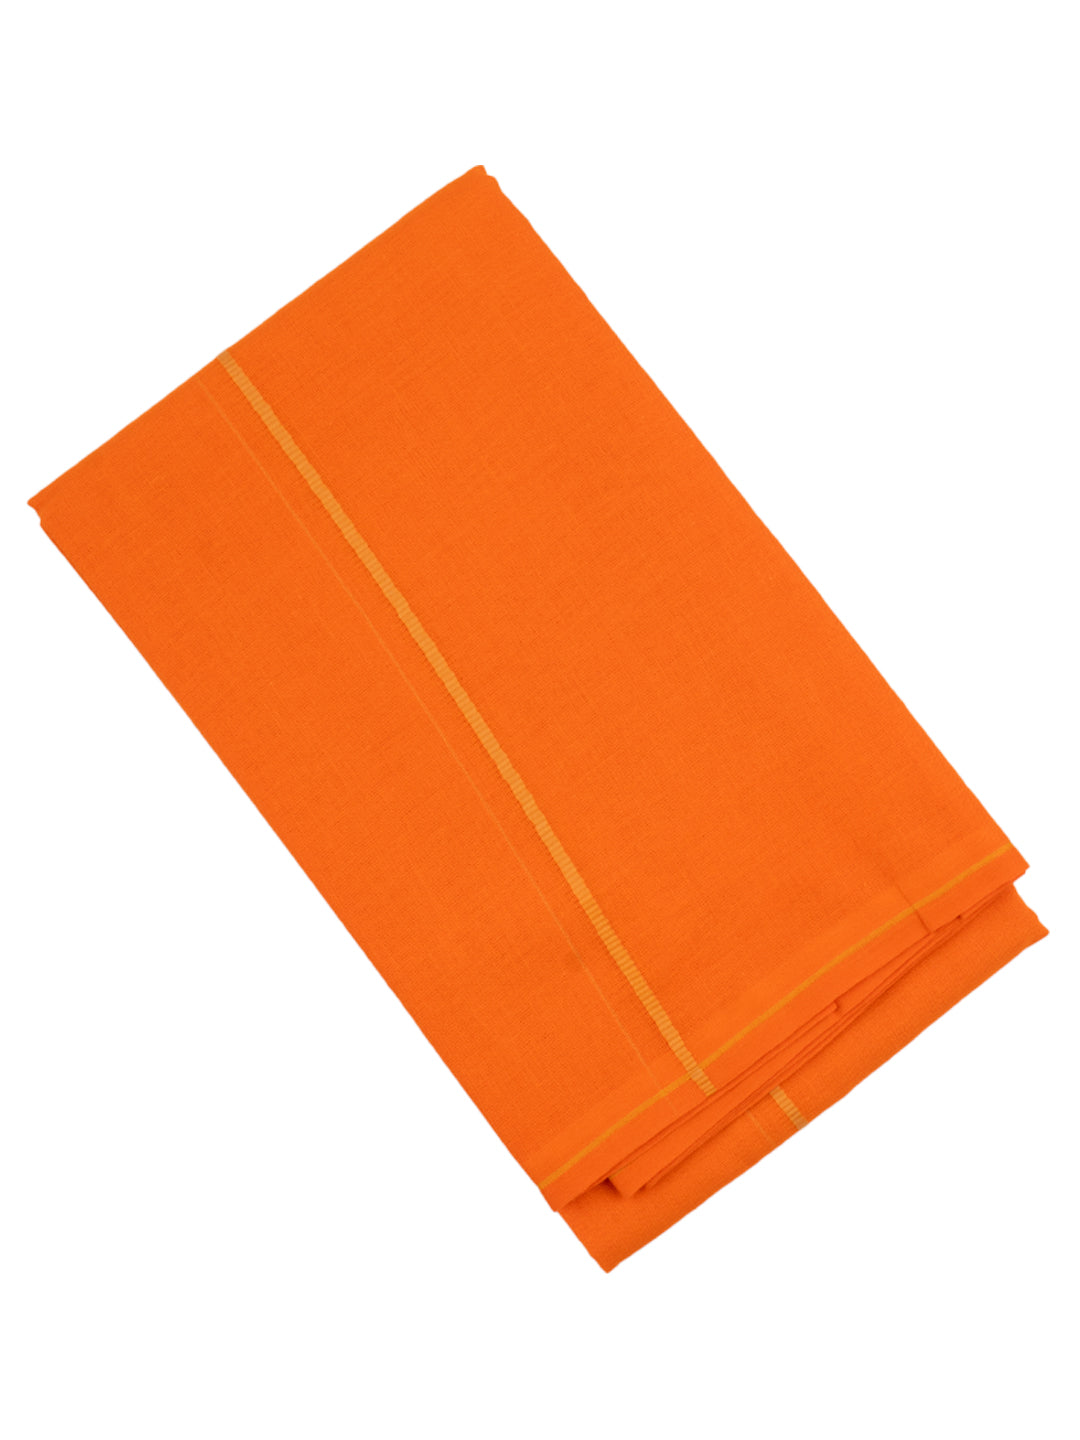 Jet Towel Orange (2 PCs Combo Pack)